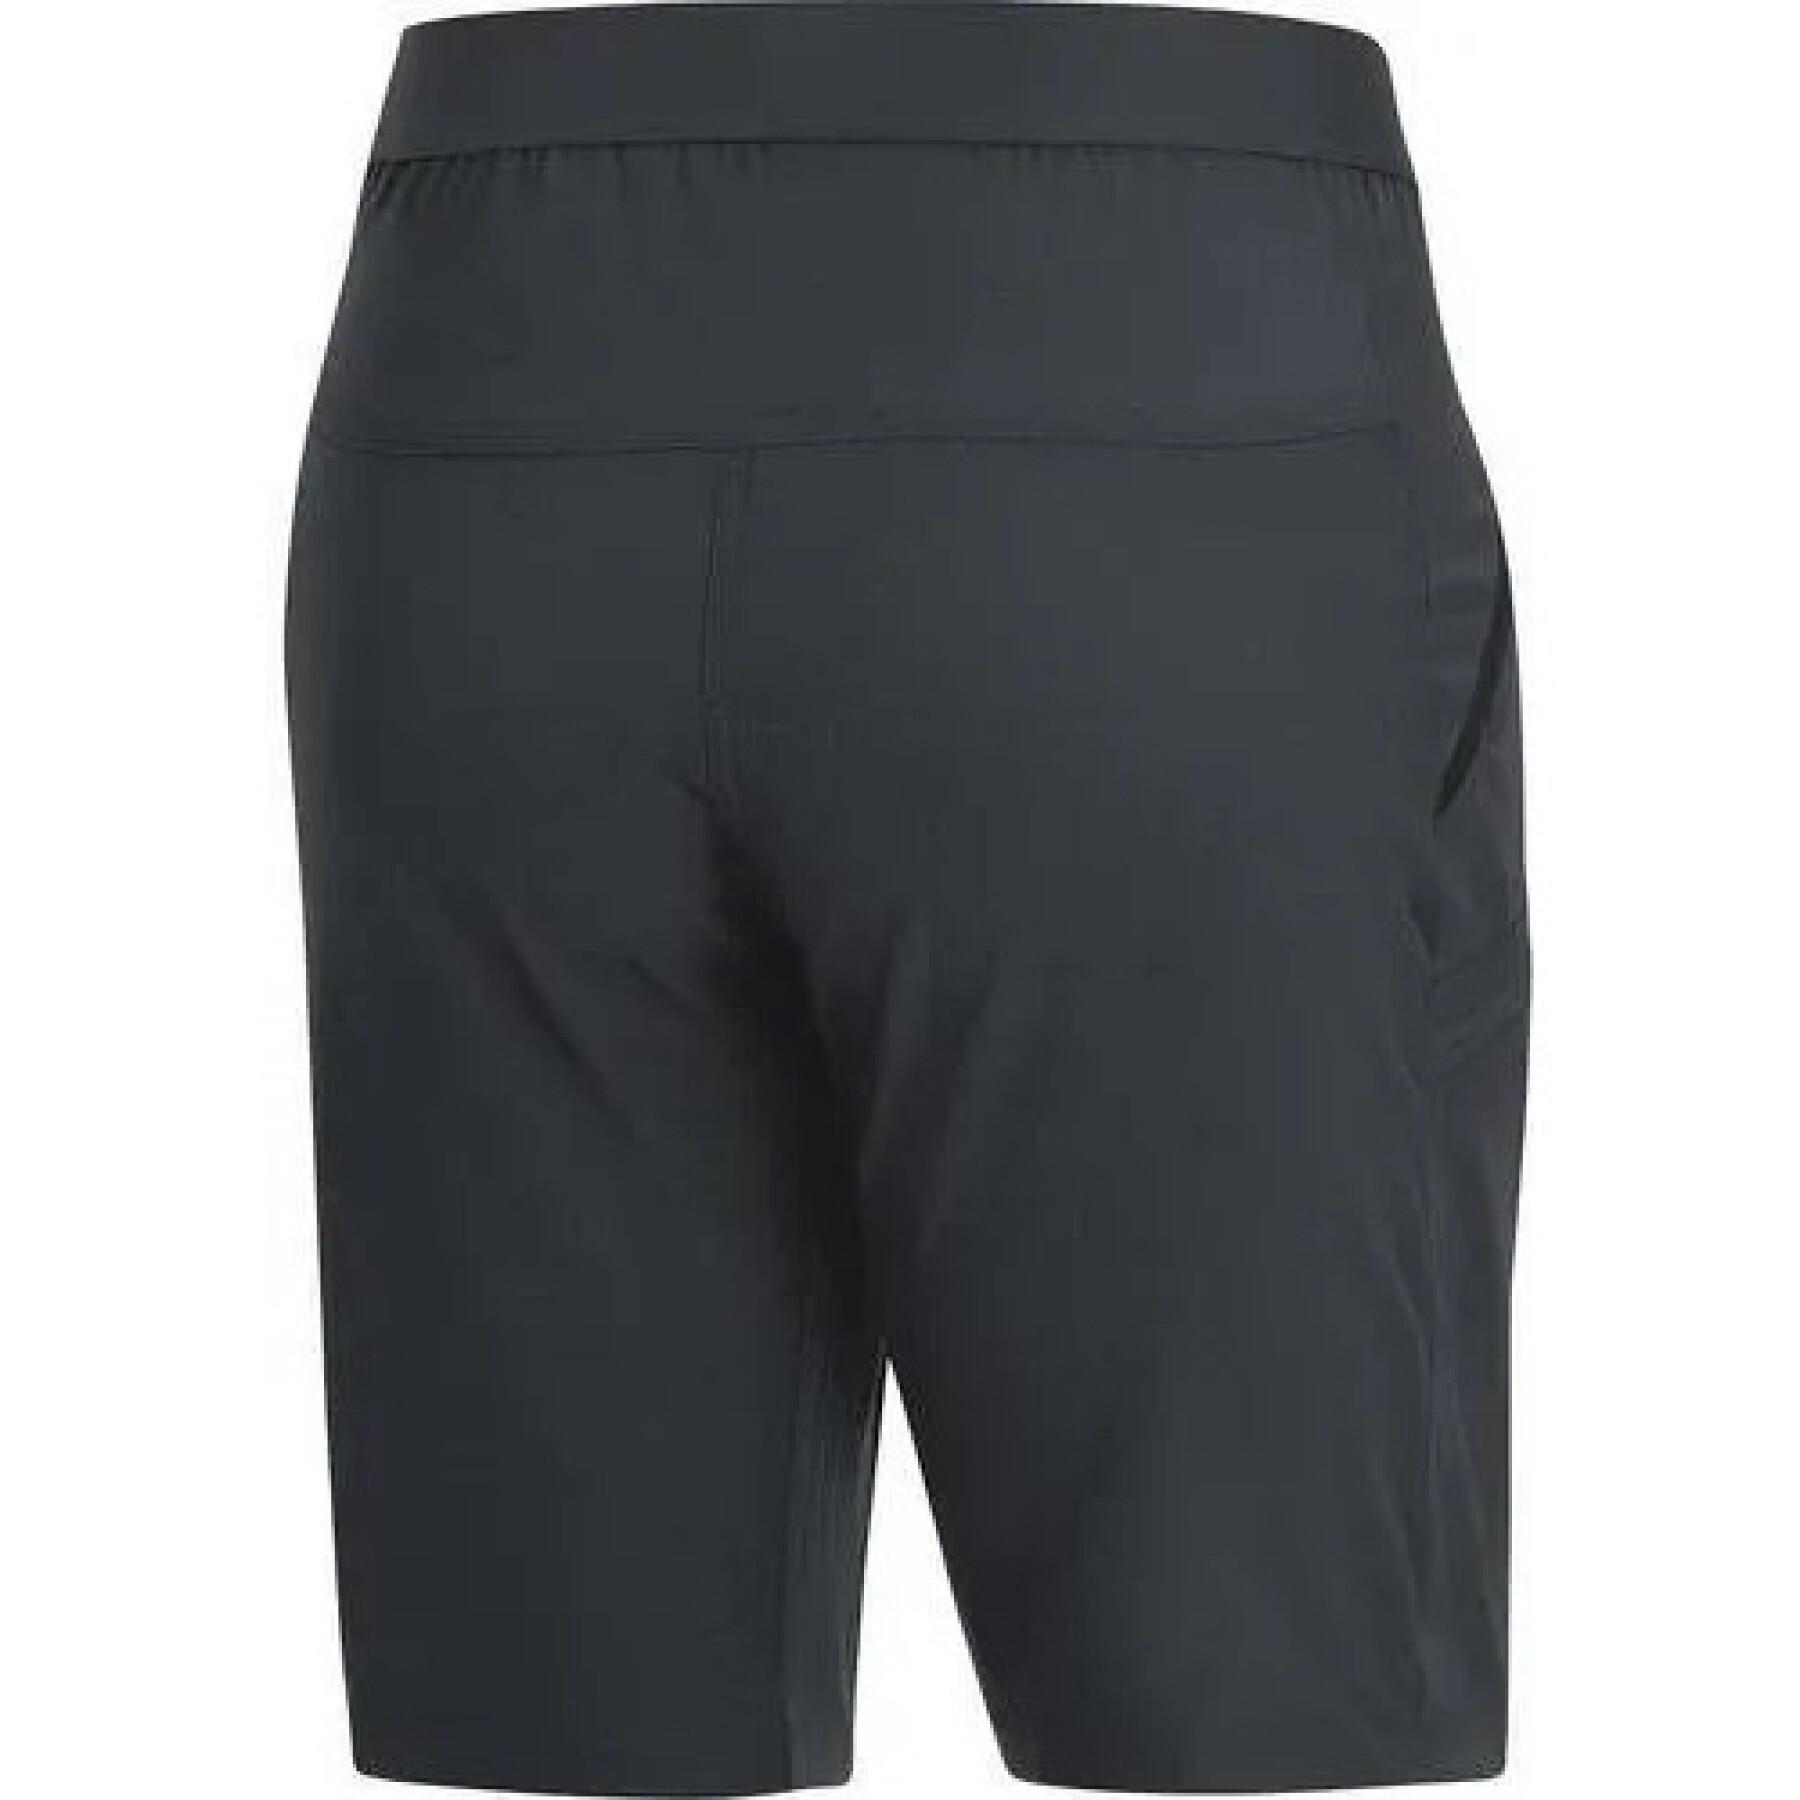 Women's shorts Gore R5